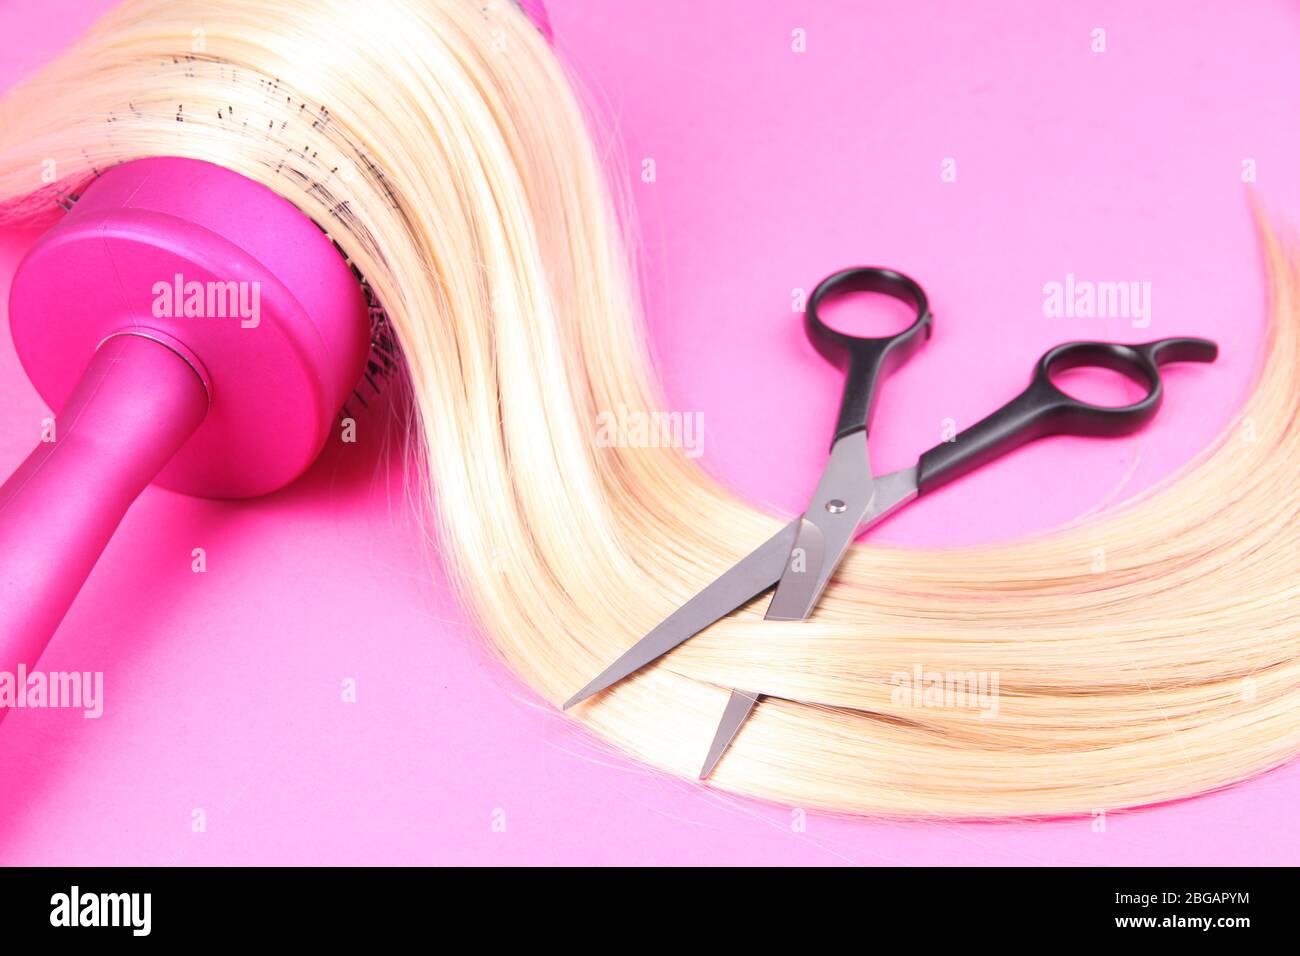 Capelli lunghi biondi con spazzola e forbici su fondo rosa Foto Stock